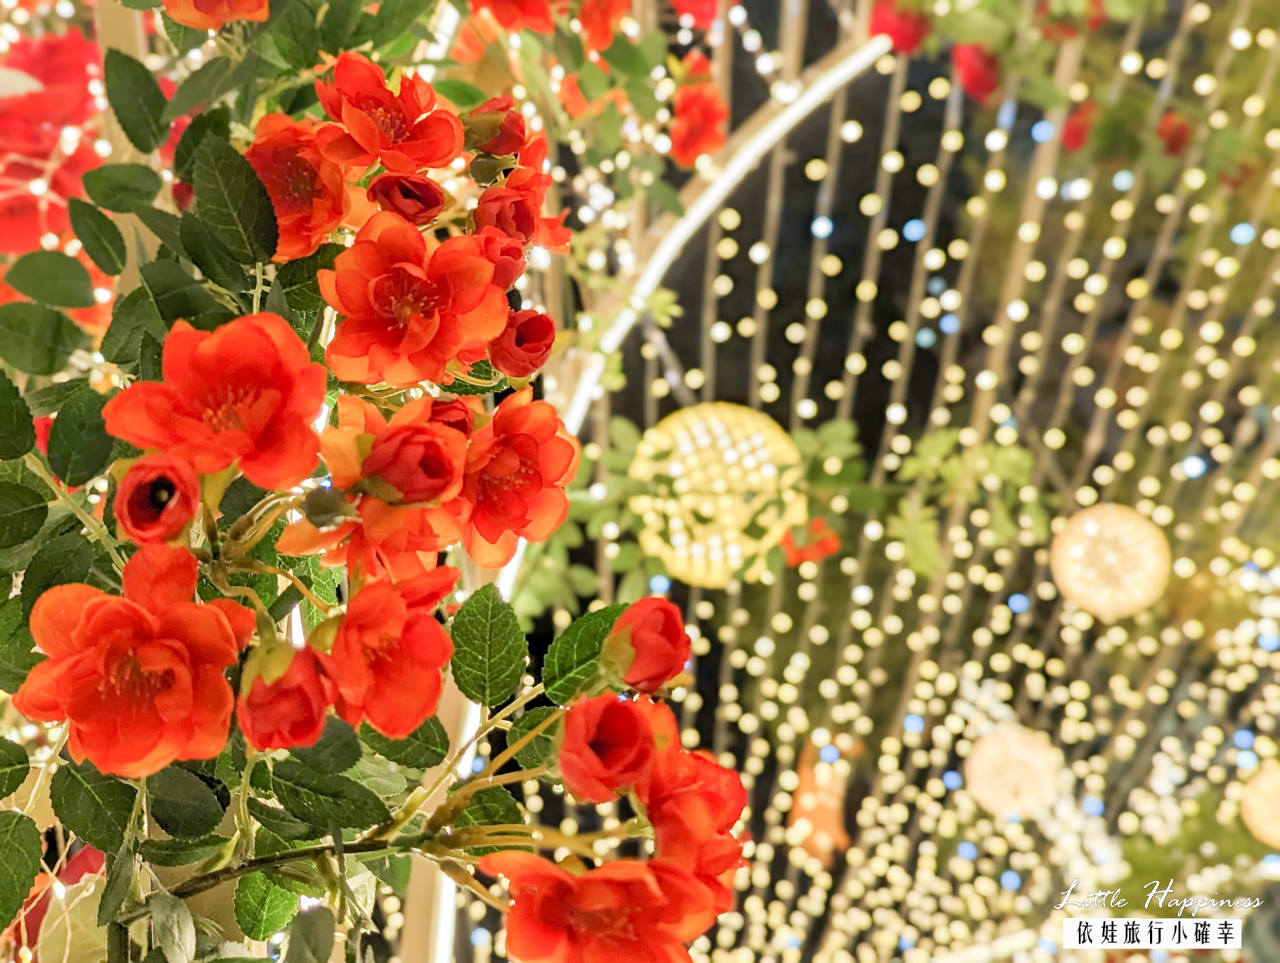 【2022聖誕節】台北101耶誕造景美翻! 搭上華麗南瓜馬車，漫步歐式古堡玫瑰花園燈海步道，拍出難忘的打卡照